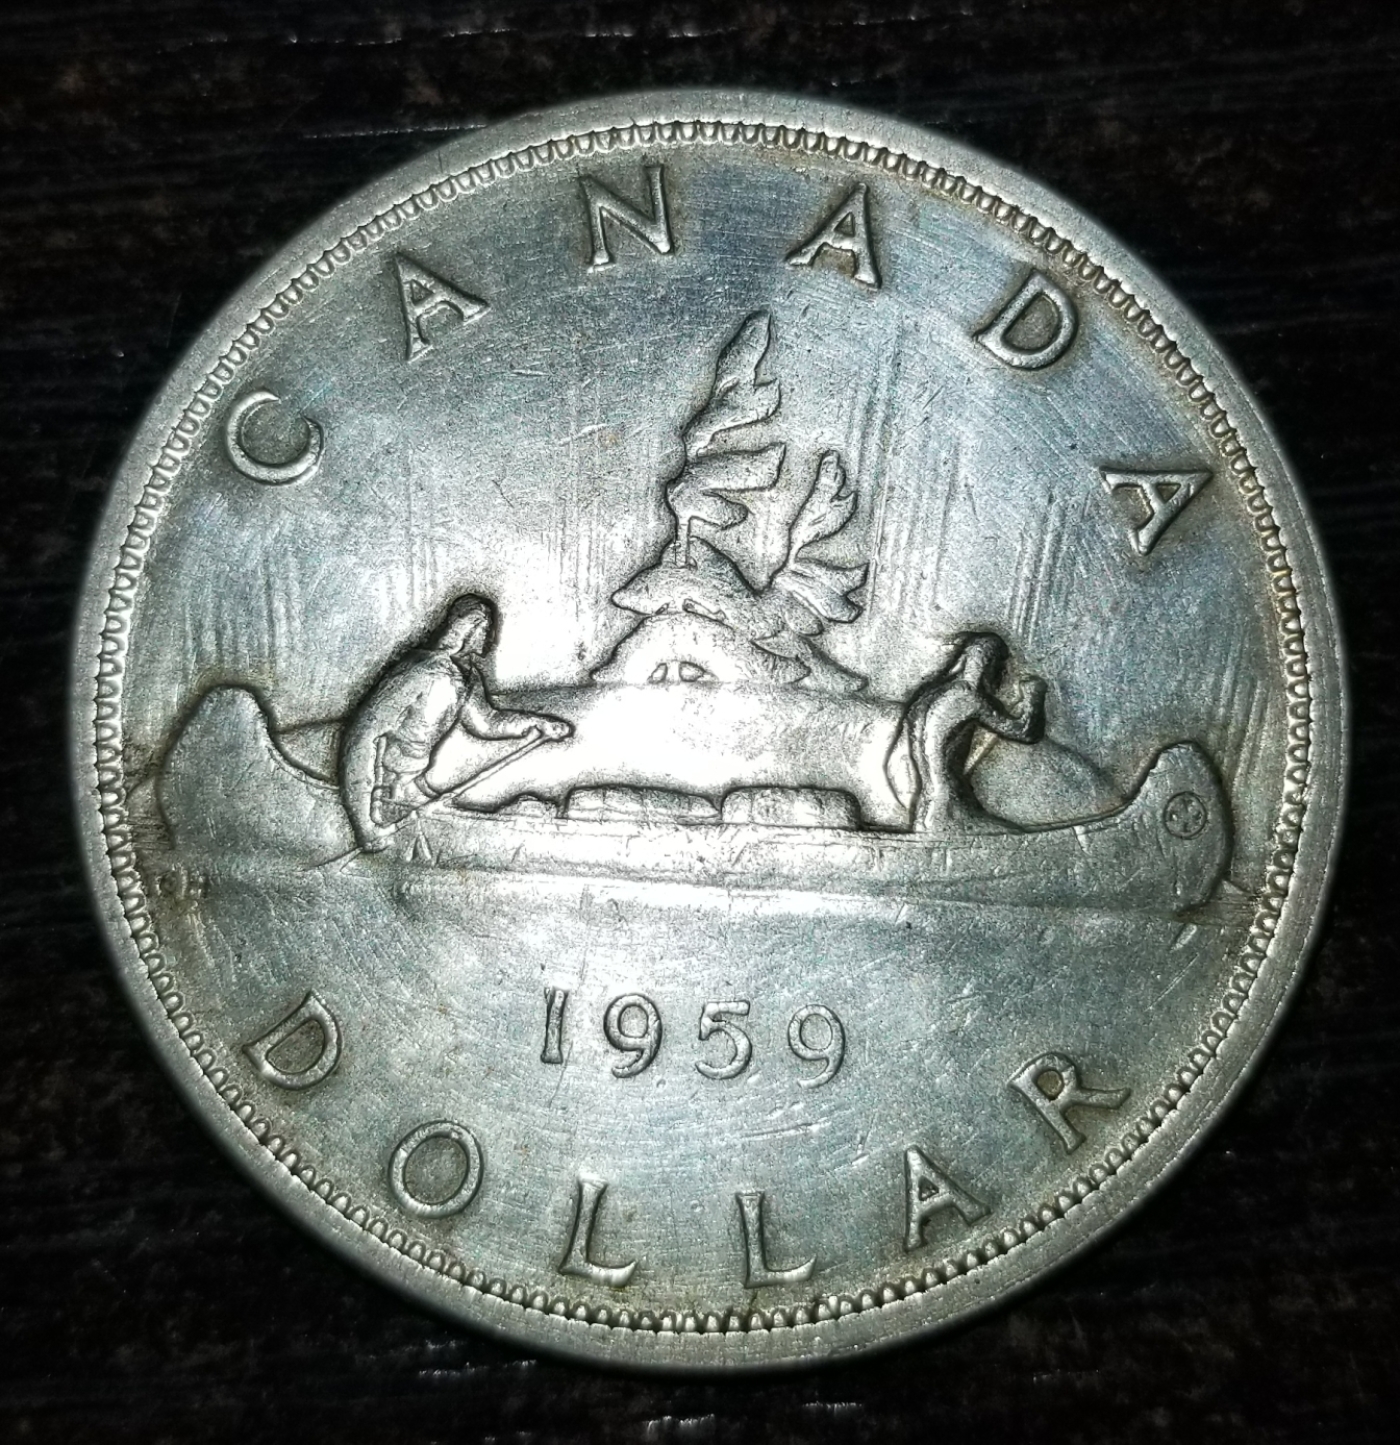 1 Dollar 1959, Elizabeth II (1953-2022) - Canada - Coin - 44484